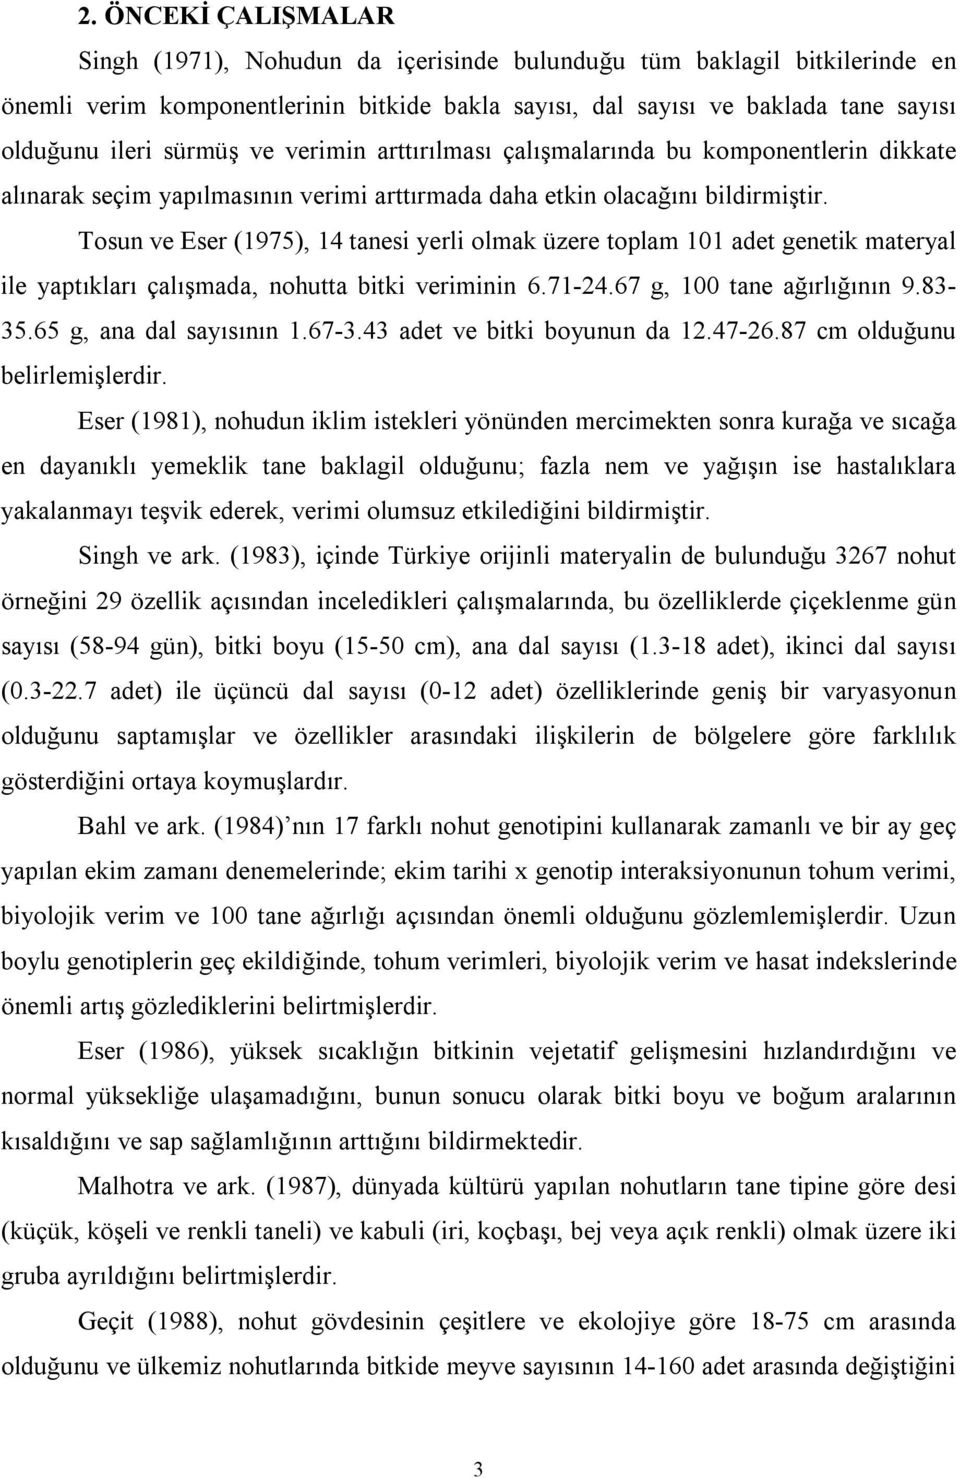 Tosun ve Eser (1975), 14 tanesi yerli olmak üzere toplam 101 adet genetik materyal ile yaptıkları çalışmada, nohutta bitki veriminin 6.71-24.67 g, 100 tane ağırlığının 9.83-35.